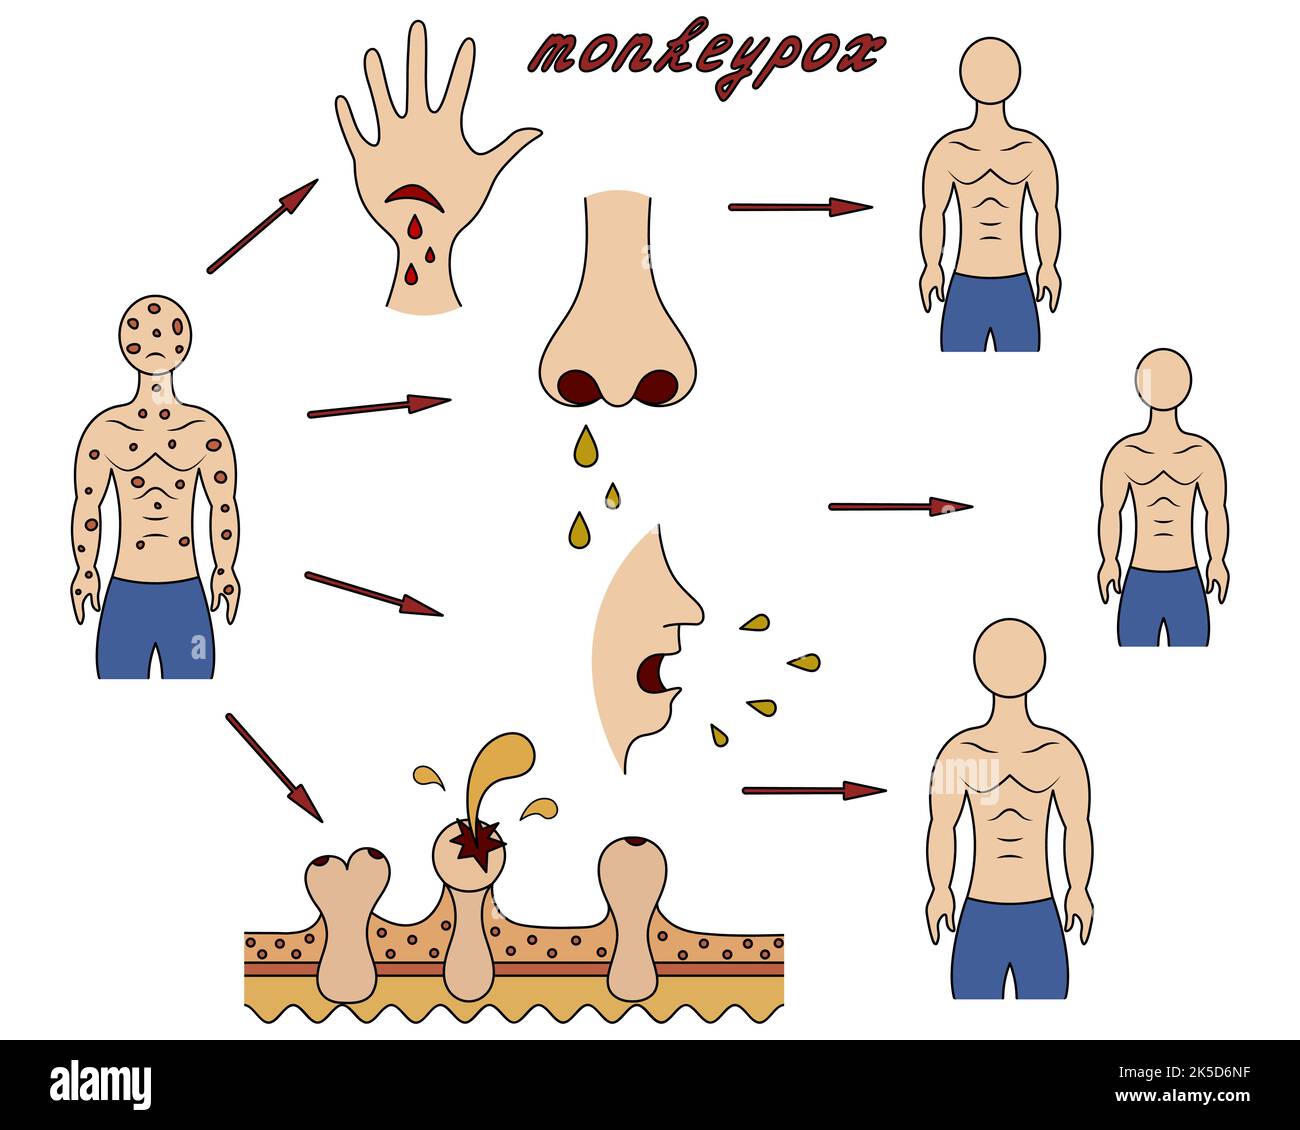 Metodi di infezione umana con monkeypox. Diagramma della trasmissione del vaiolo da uomo a uomo. Illustrazione del vettore dei colori. Illustrazione Vettoriale